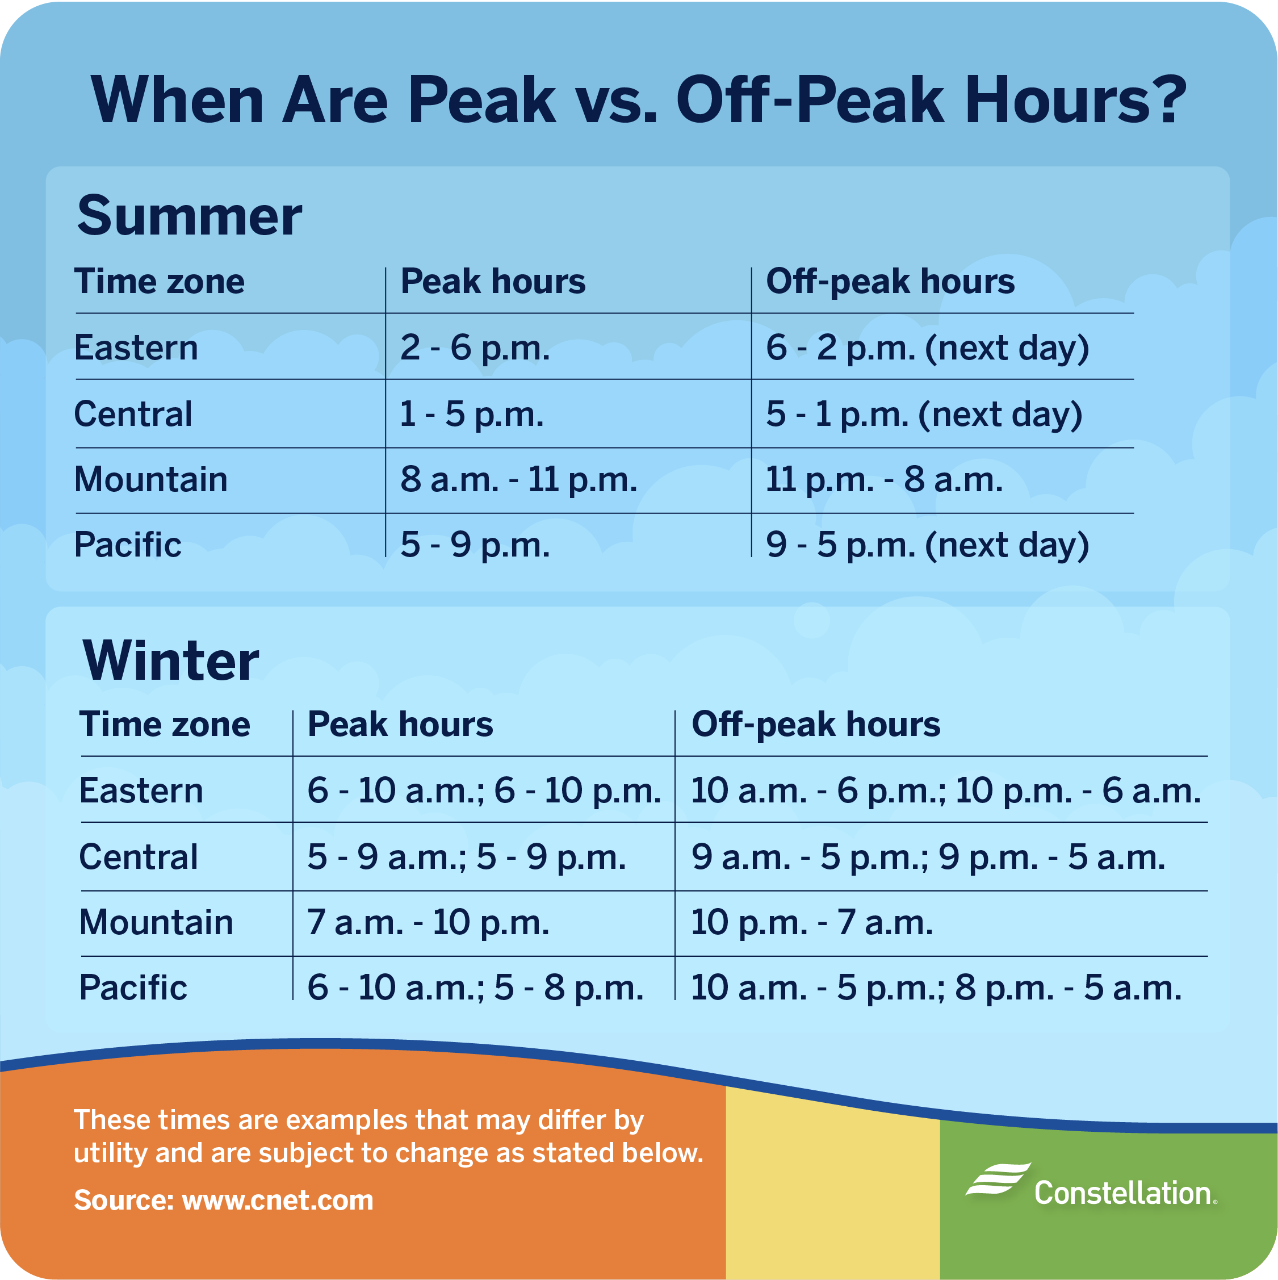 what are peak vs off-peak hours?